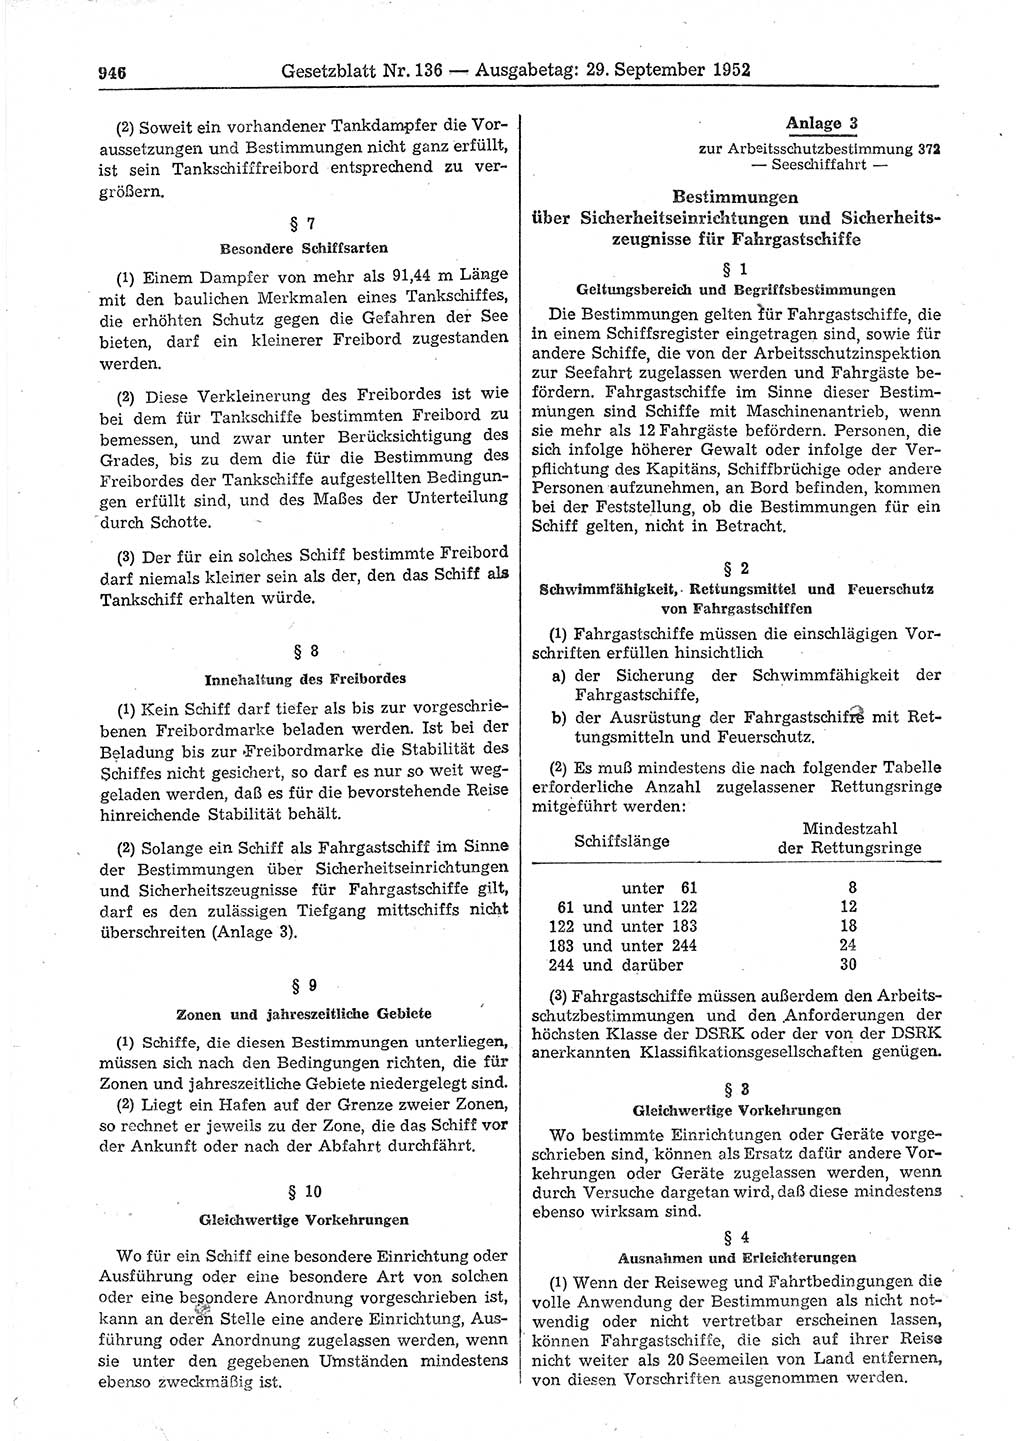 Gesetzblatt (GBl.) der Deutschen Demokratischen Republik (DDR) 1952, Seite 946 (GBl. DDR 1952, S. 946)